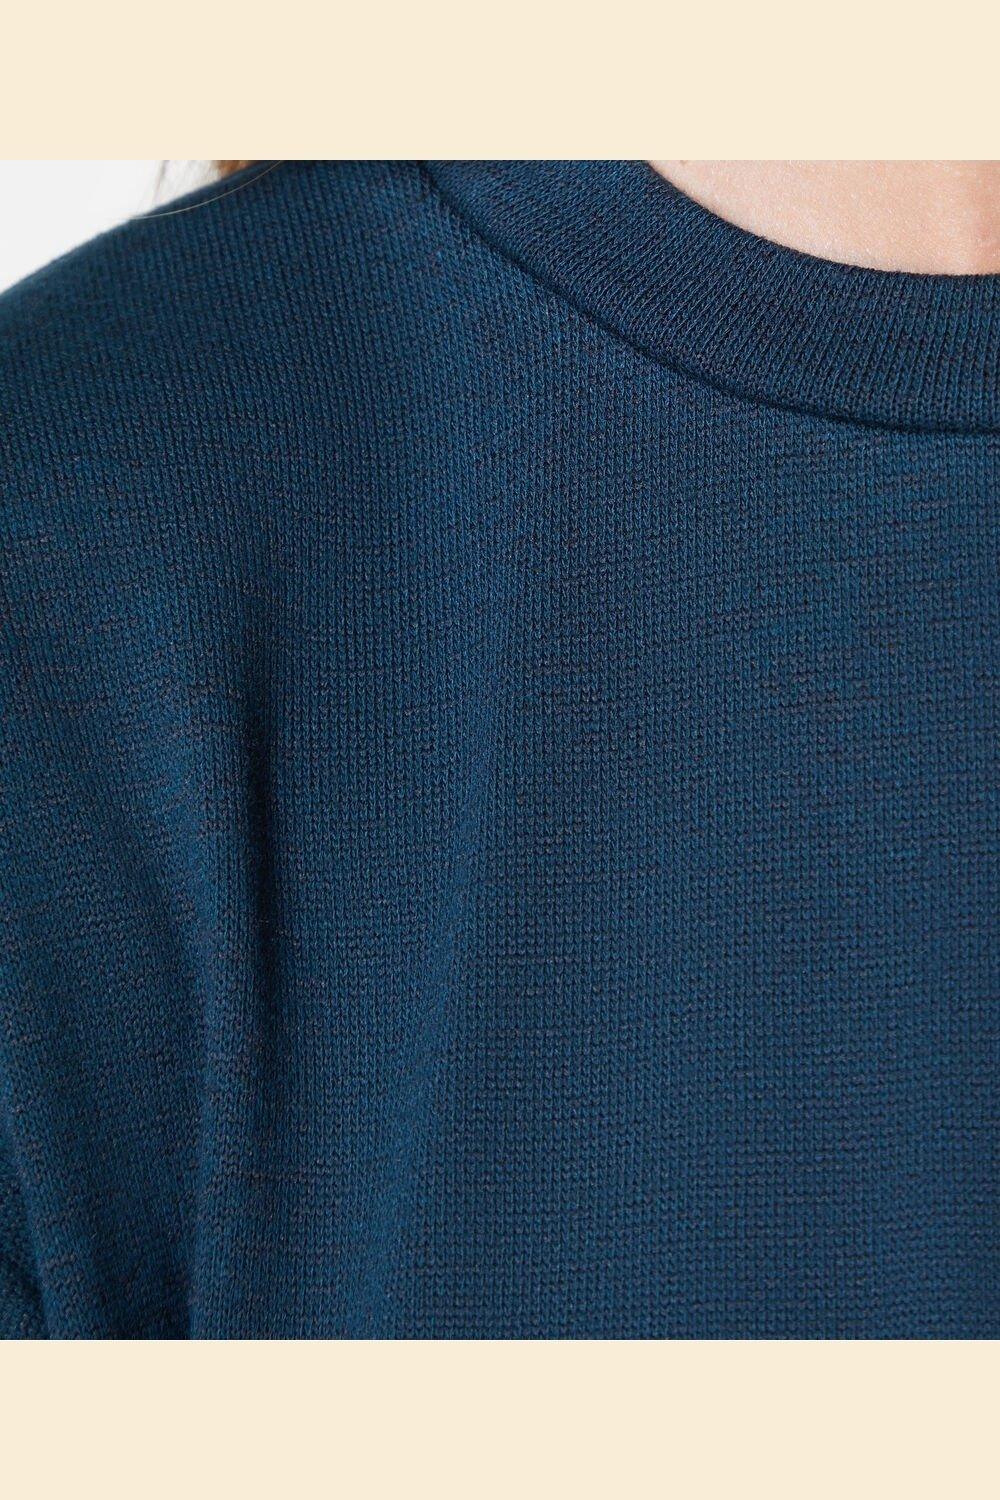 ETAM - חולצת פיג'מה ארוכה EARLY כחול - MASHBIR//365